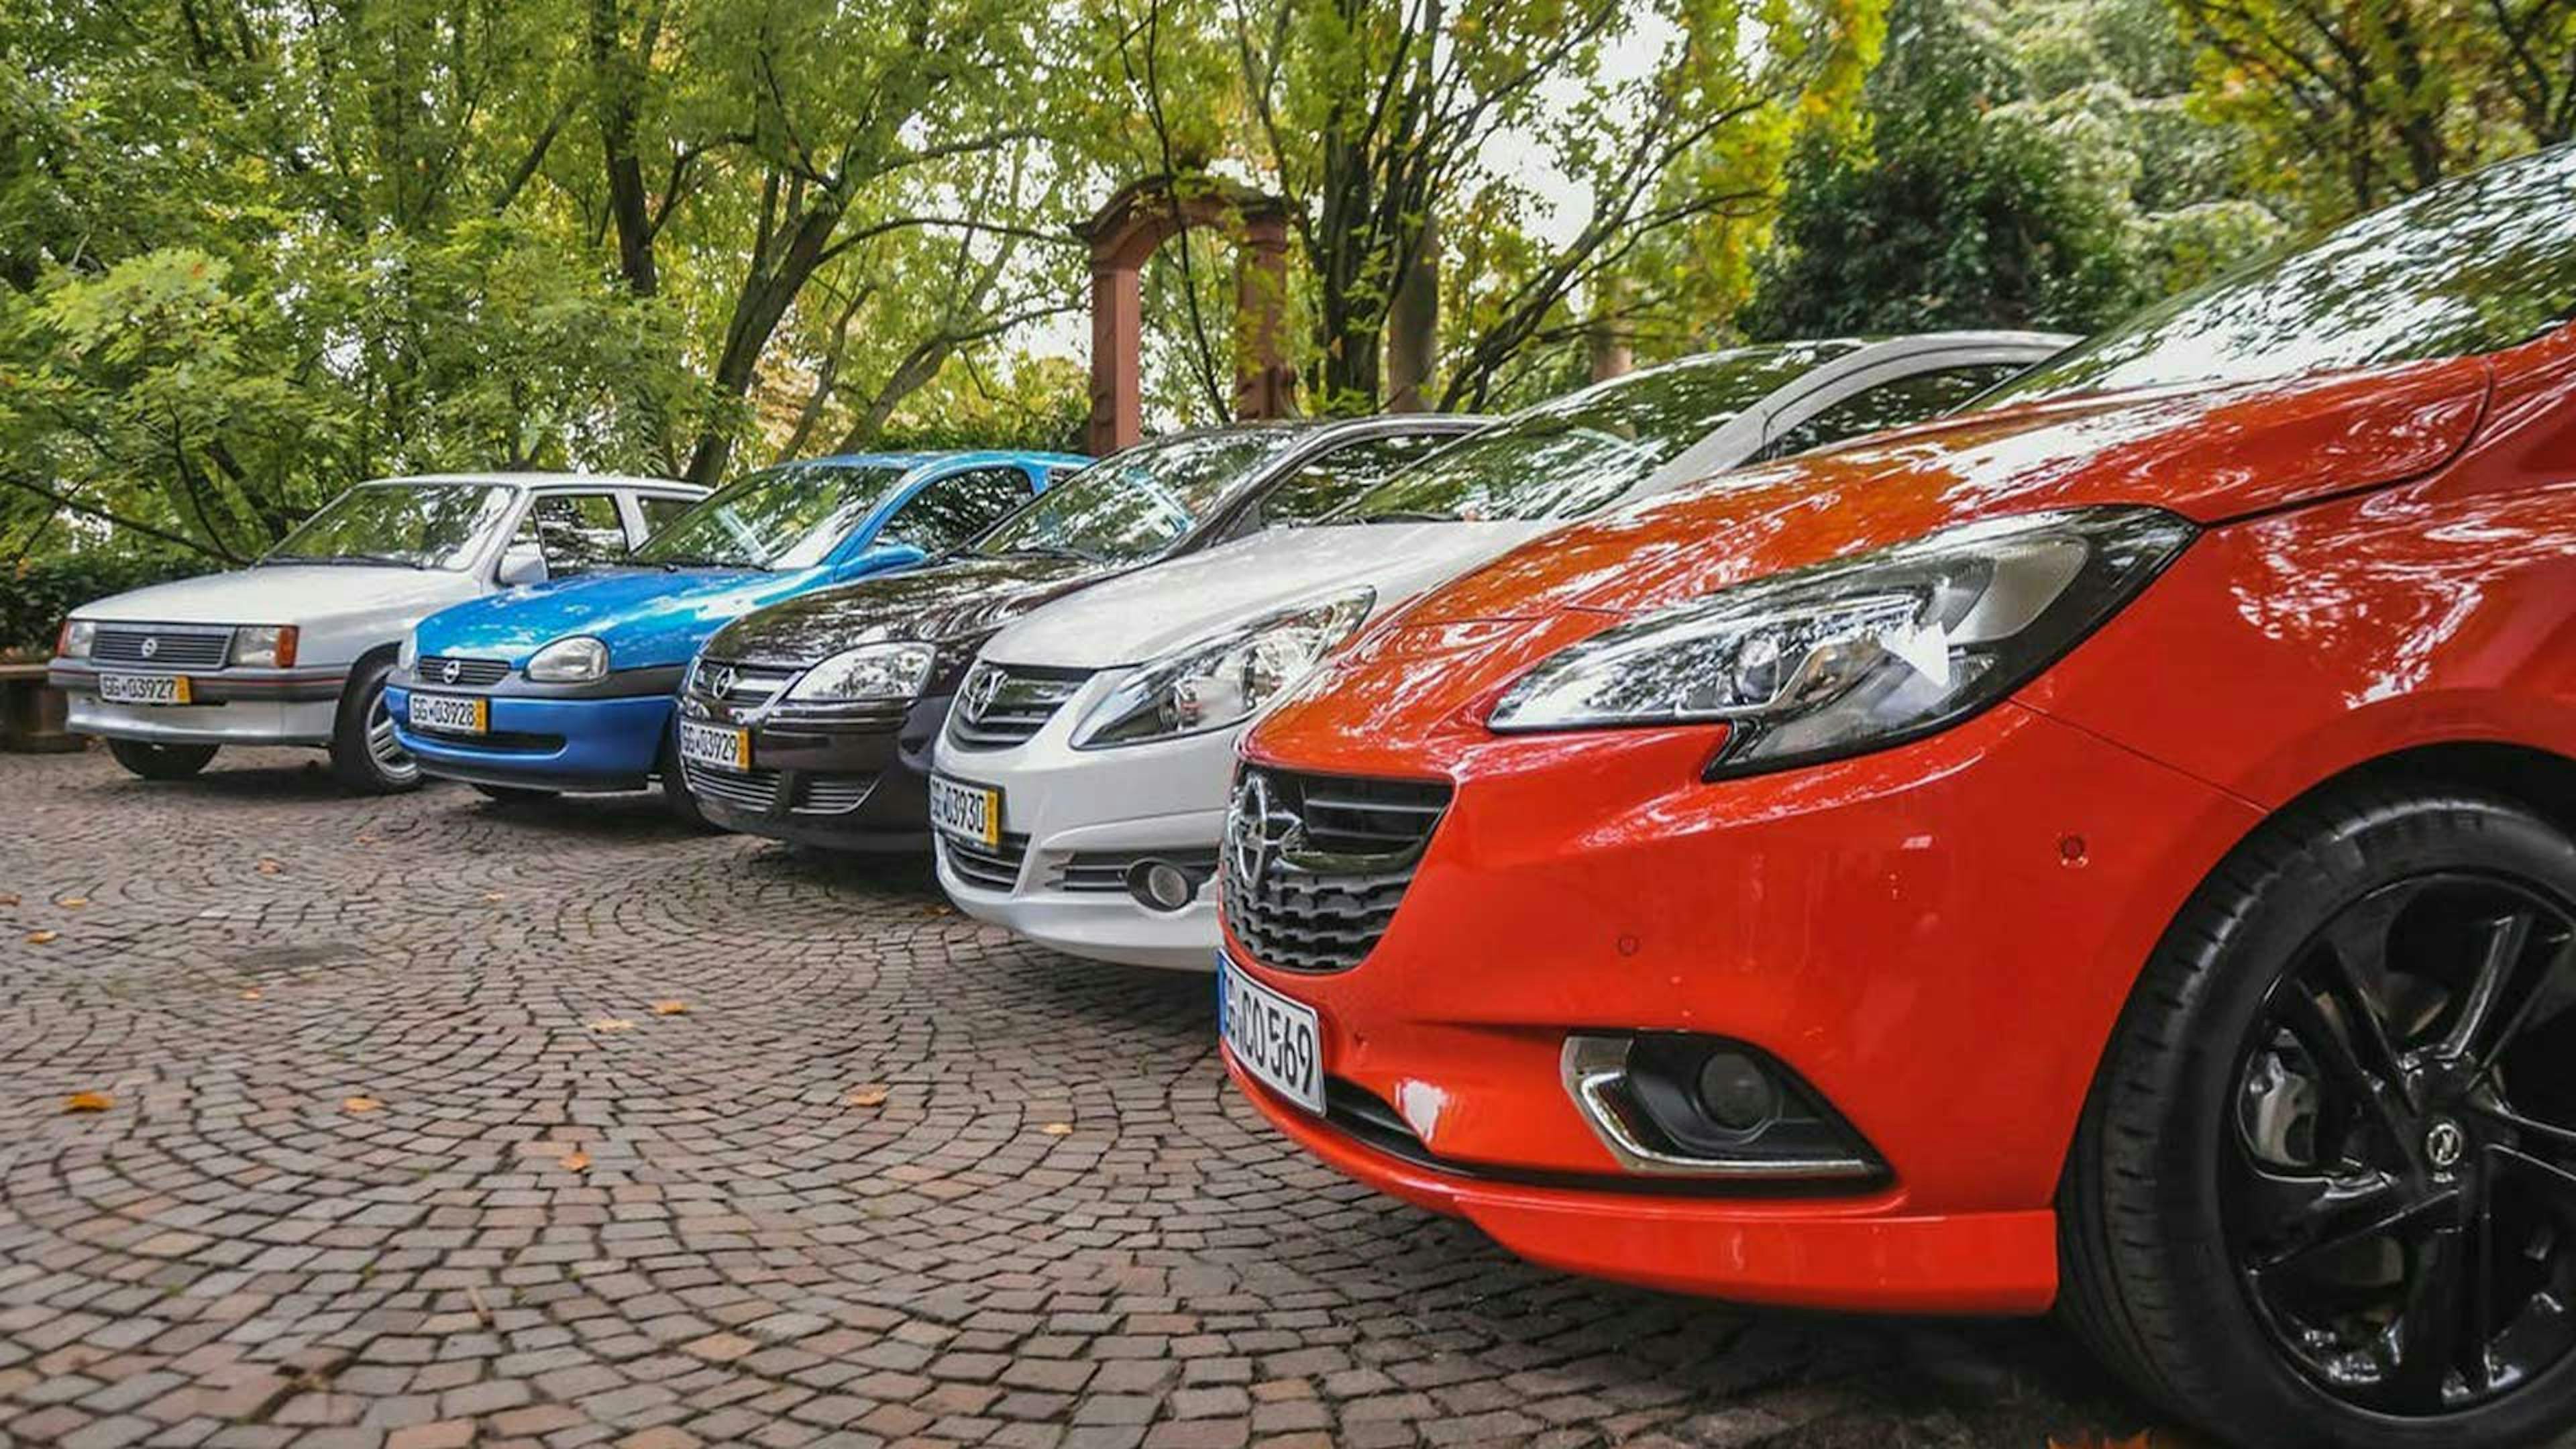 Fünf Pkw der Marke Opel stehen nebeneinander auf einem Parkplatz mit Bäumen im Hintergrund